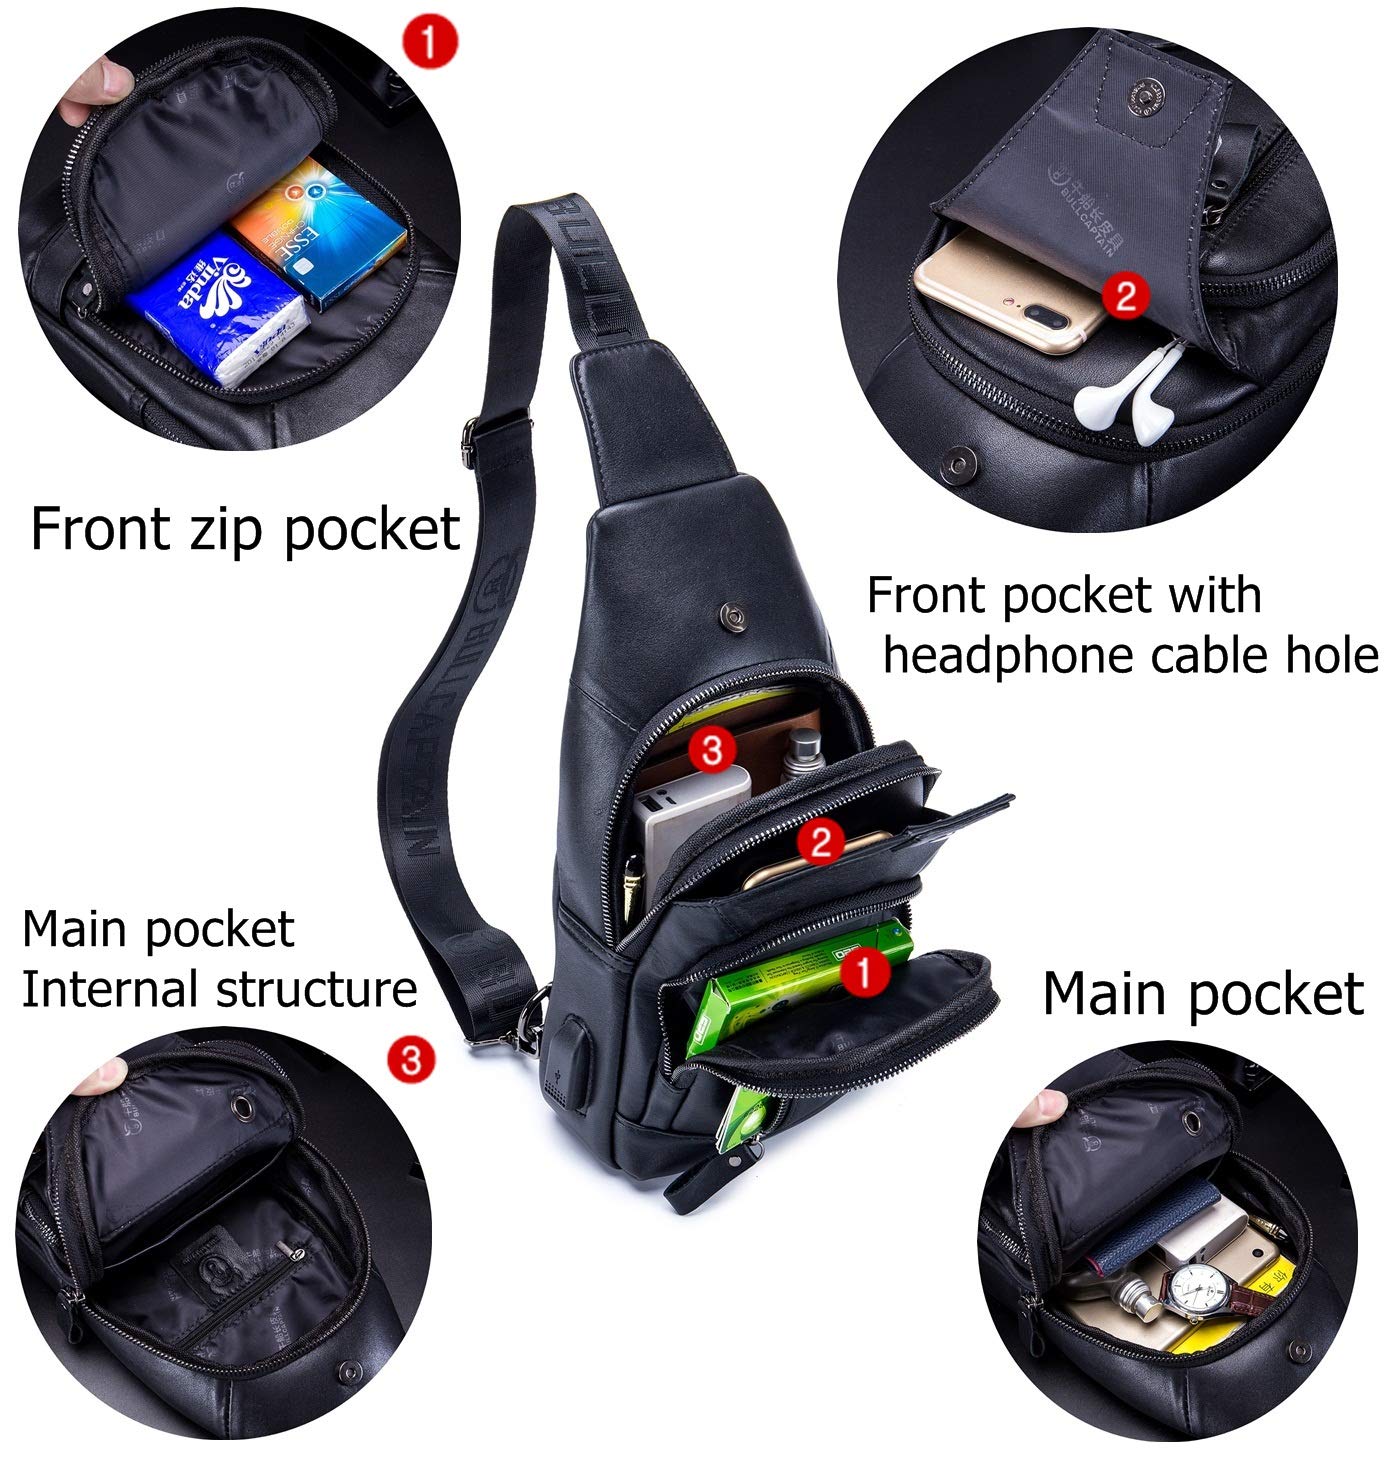 BULLCAPTAIN Genuine Leather Mens Sling Bag Multipurpose Travel Crossbody Chest Bag Daypacks with USB Charging Port (Black)